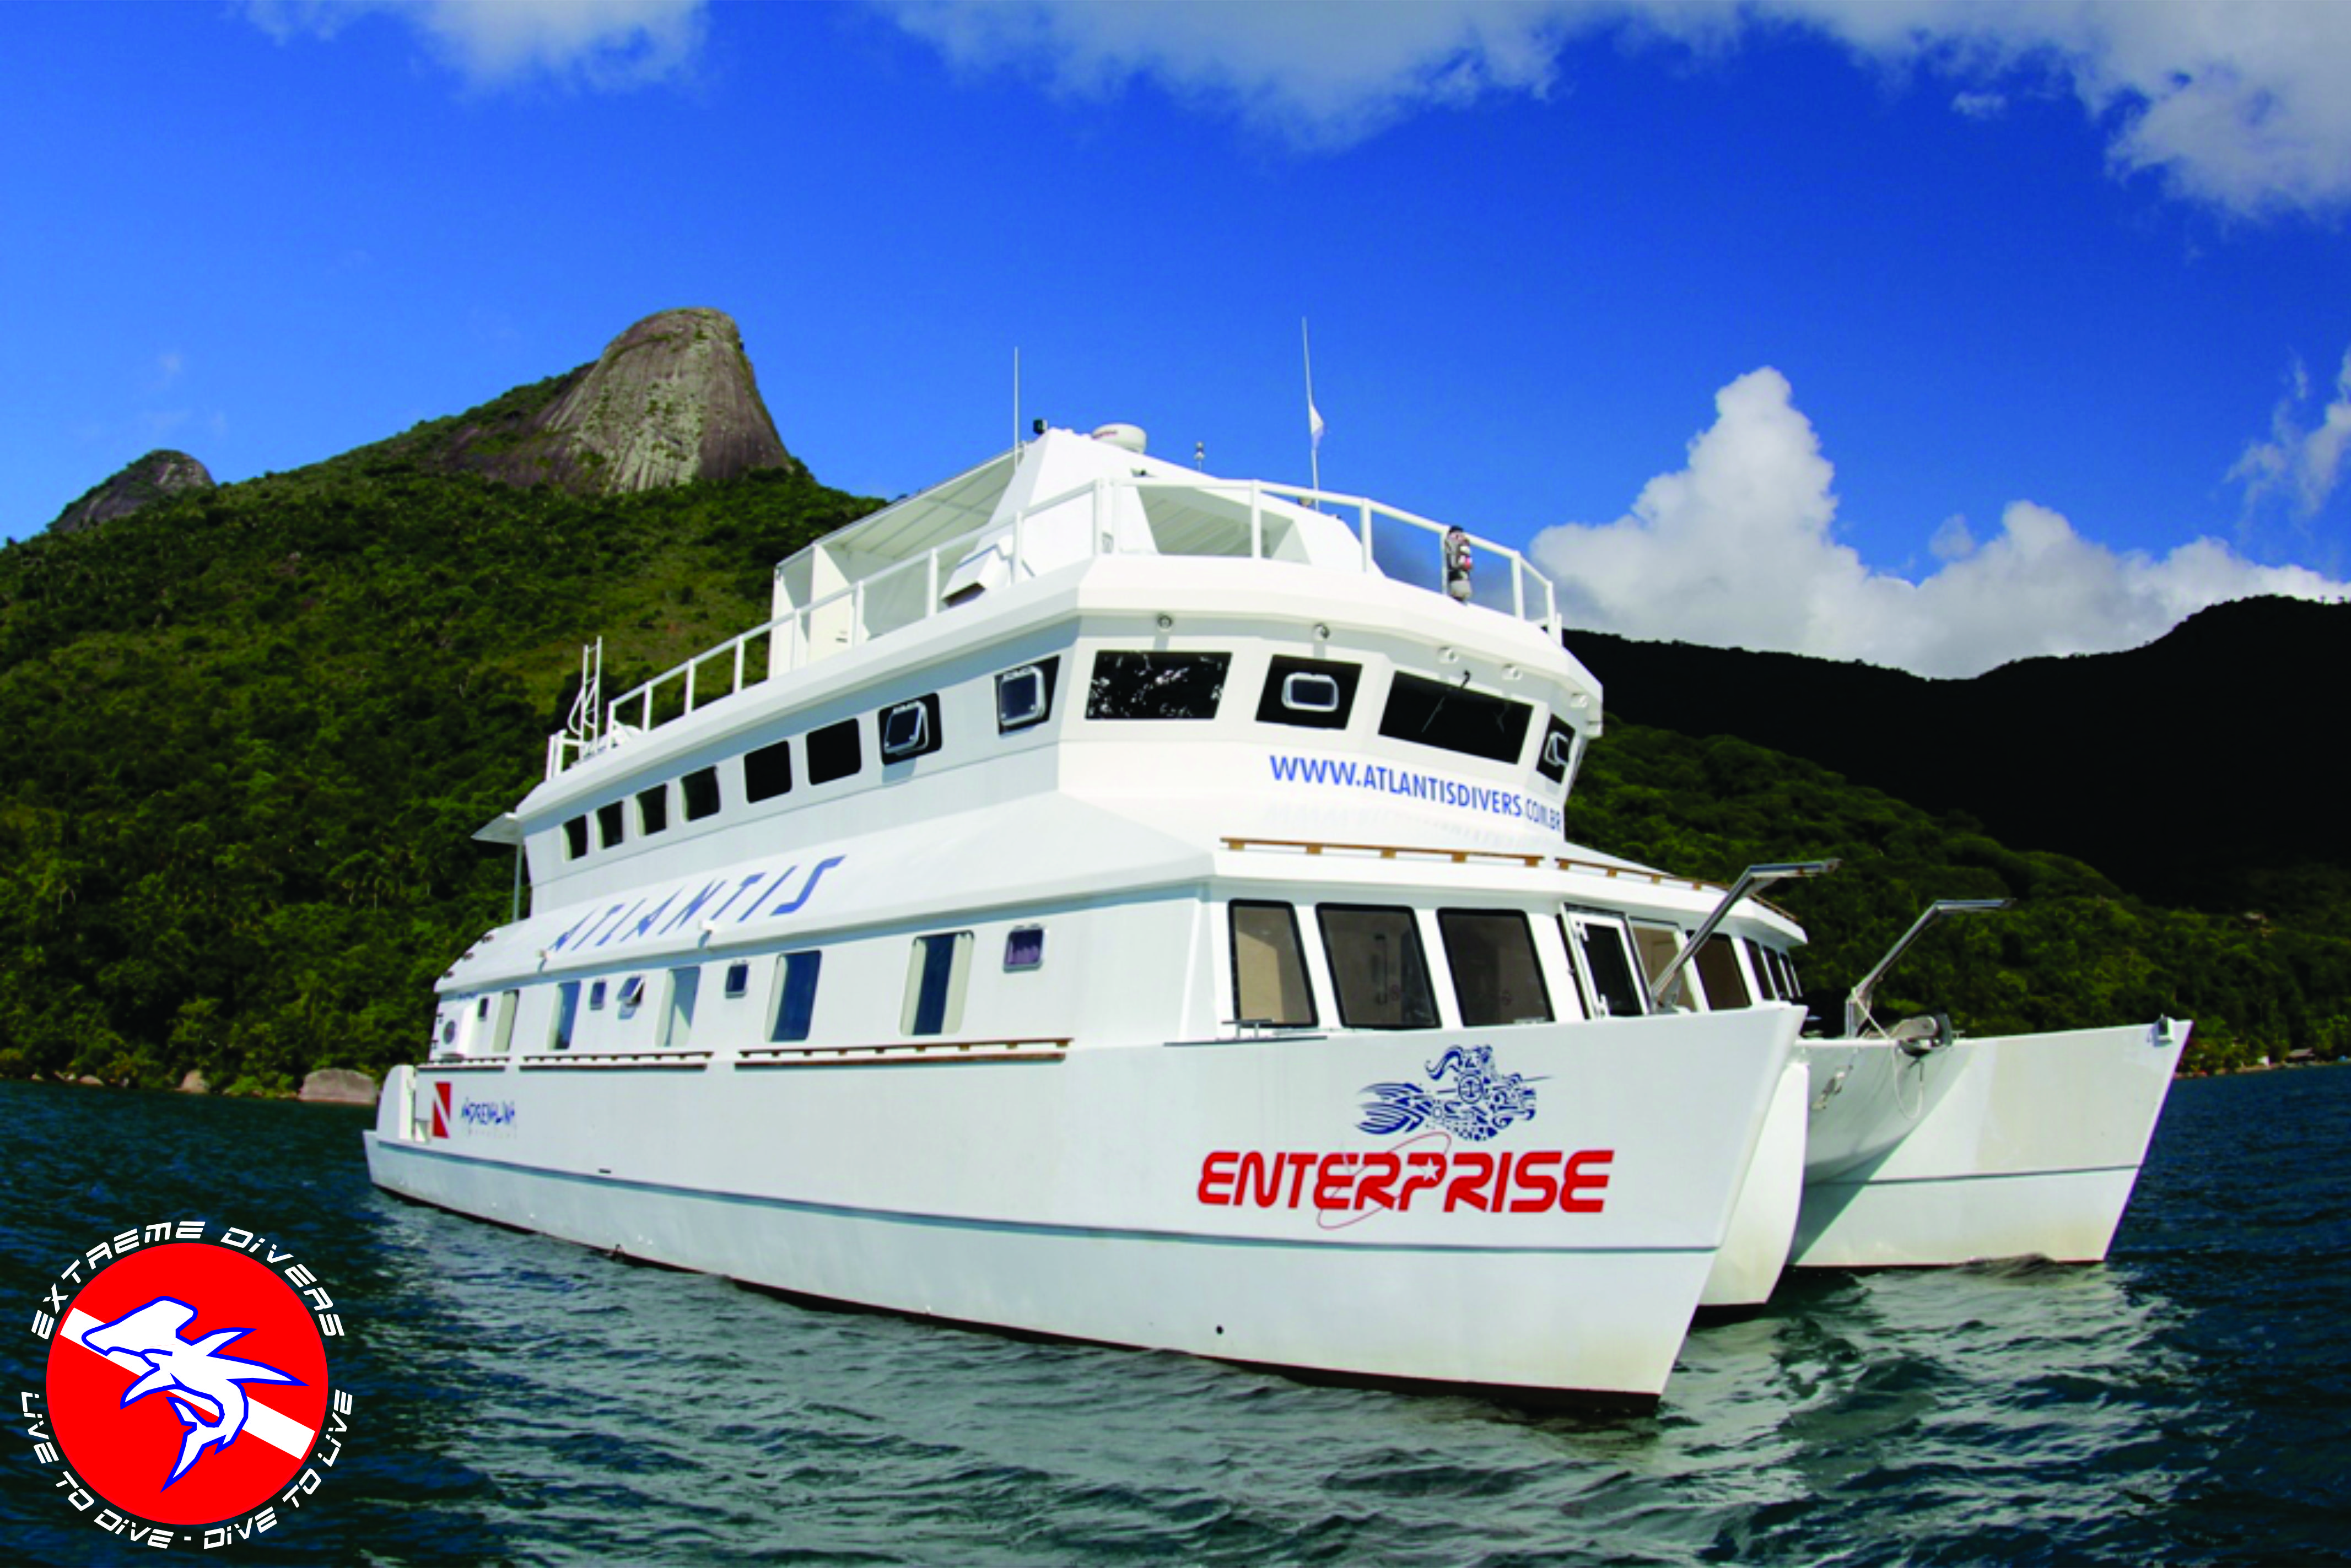 Live Aboard Enterprise XXV – Reserva Exclusiva parcelado em até 8x – 15 e 16 de Agosto de 2015  – Até 8 Mergulhos!!!